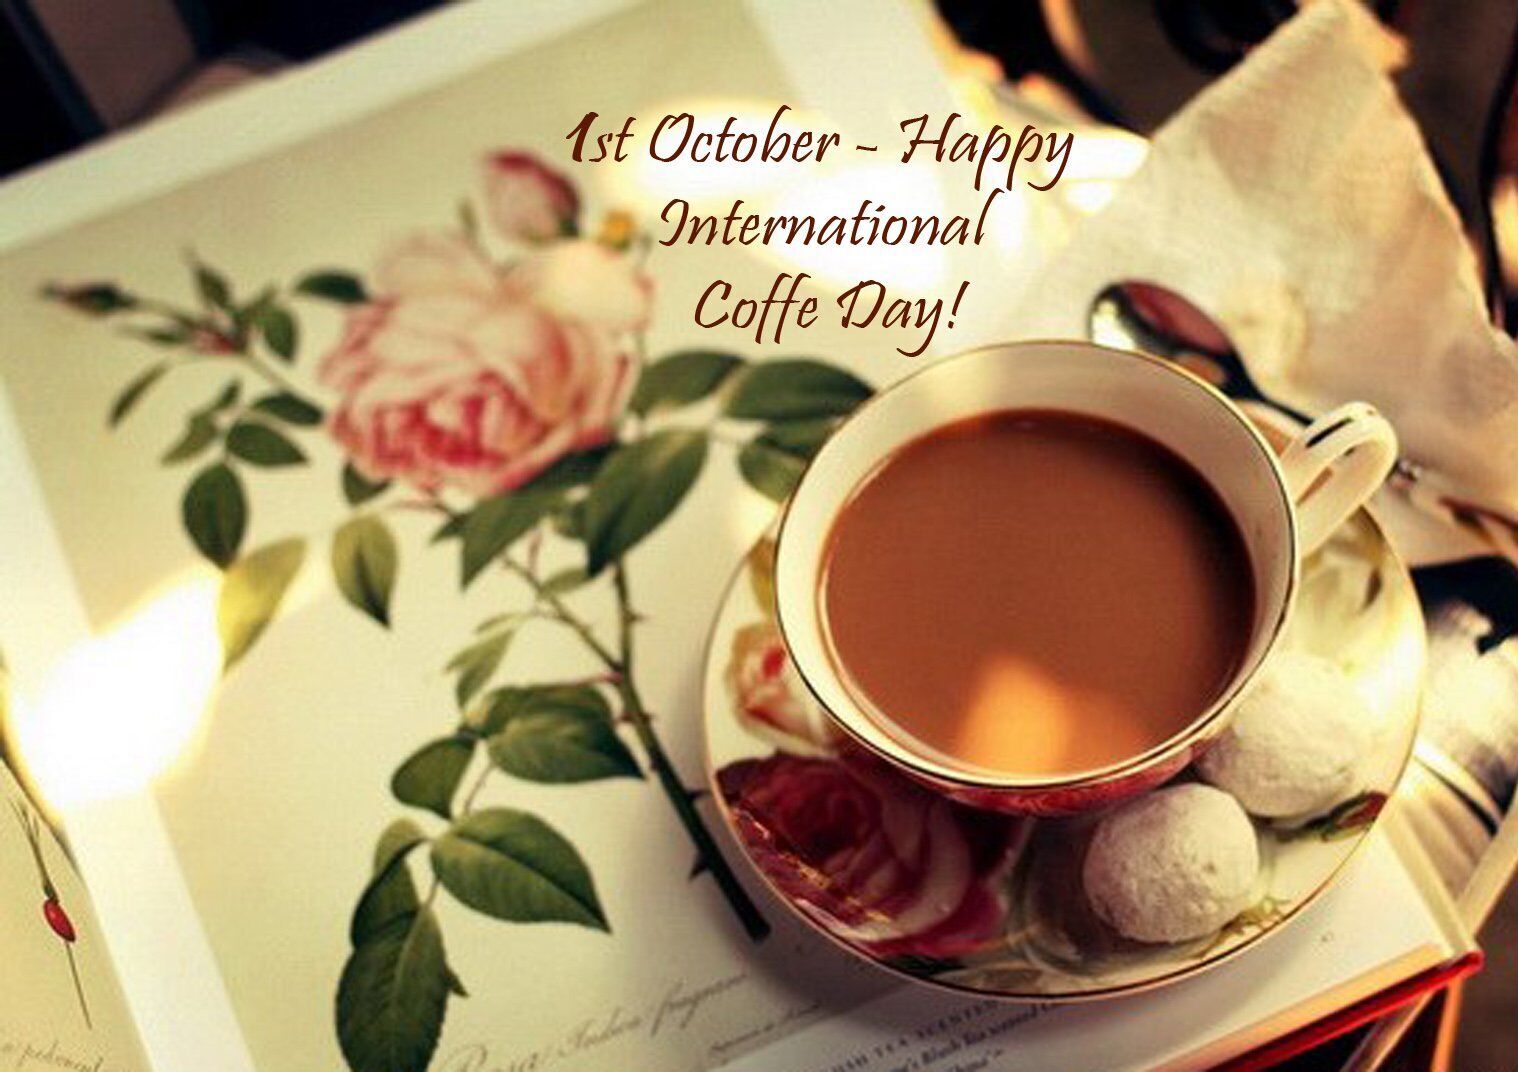 Міжнародний день кави відзначається 1 жовтня